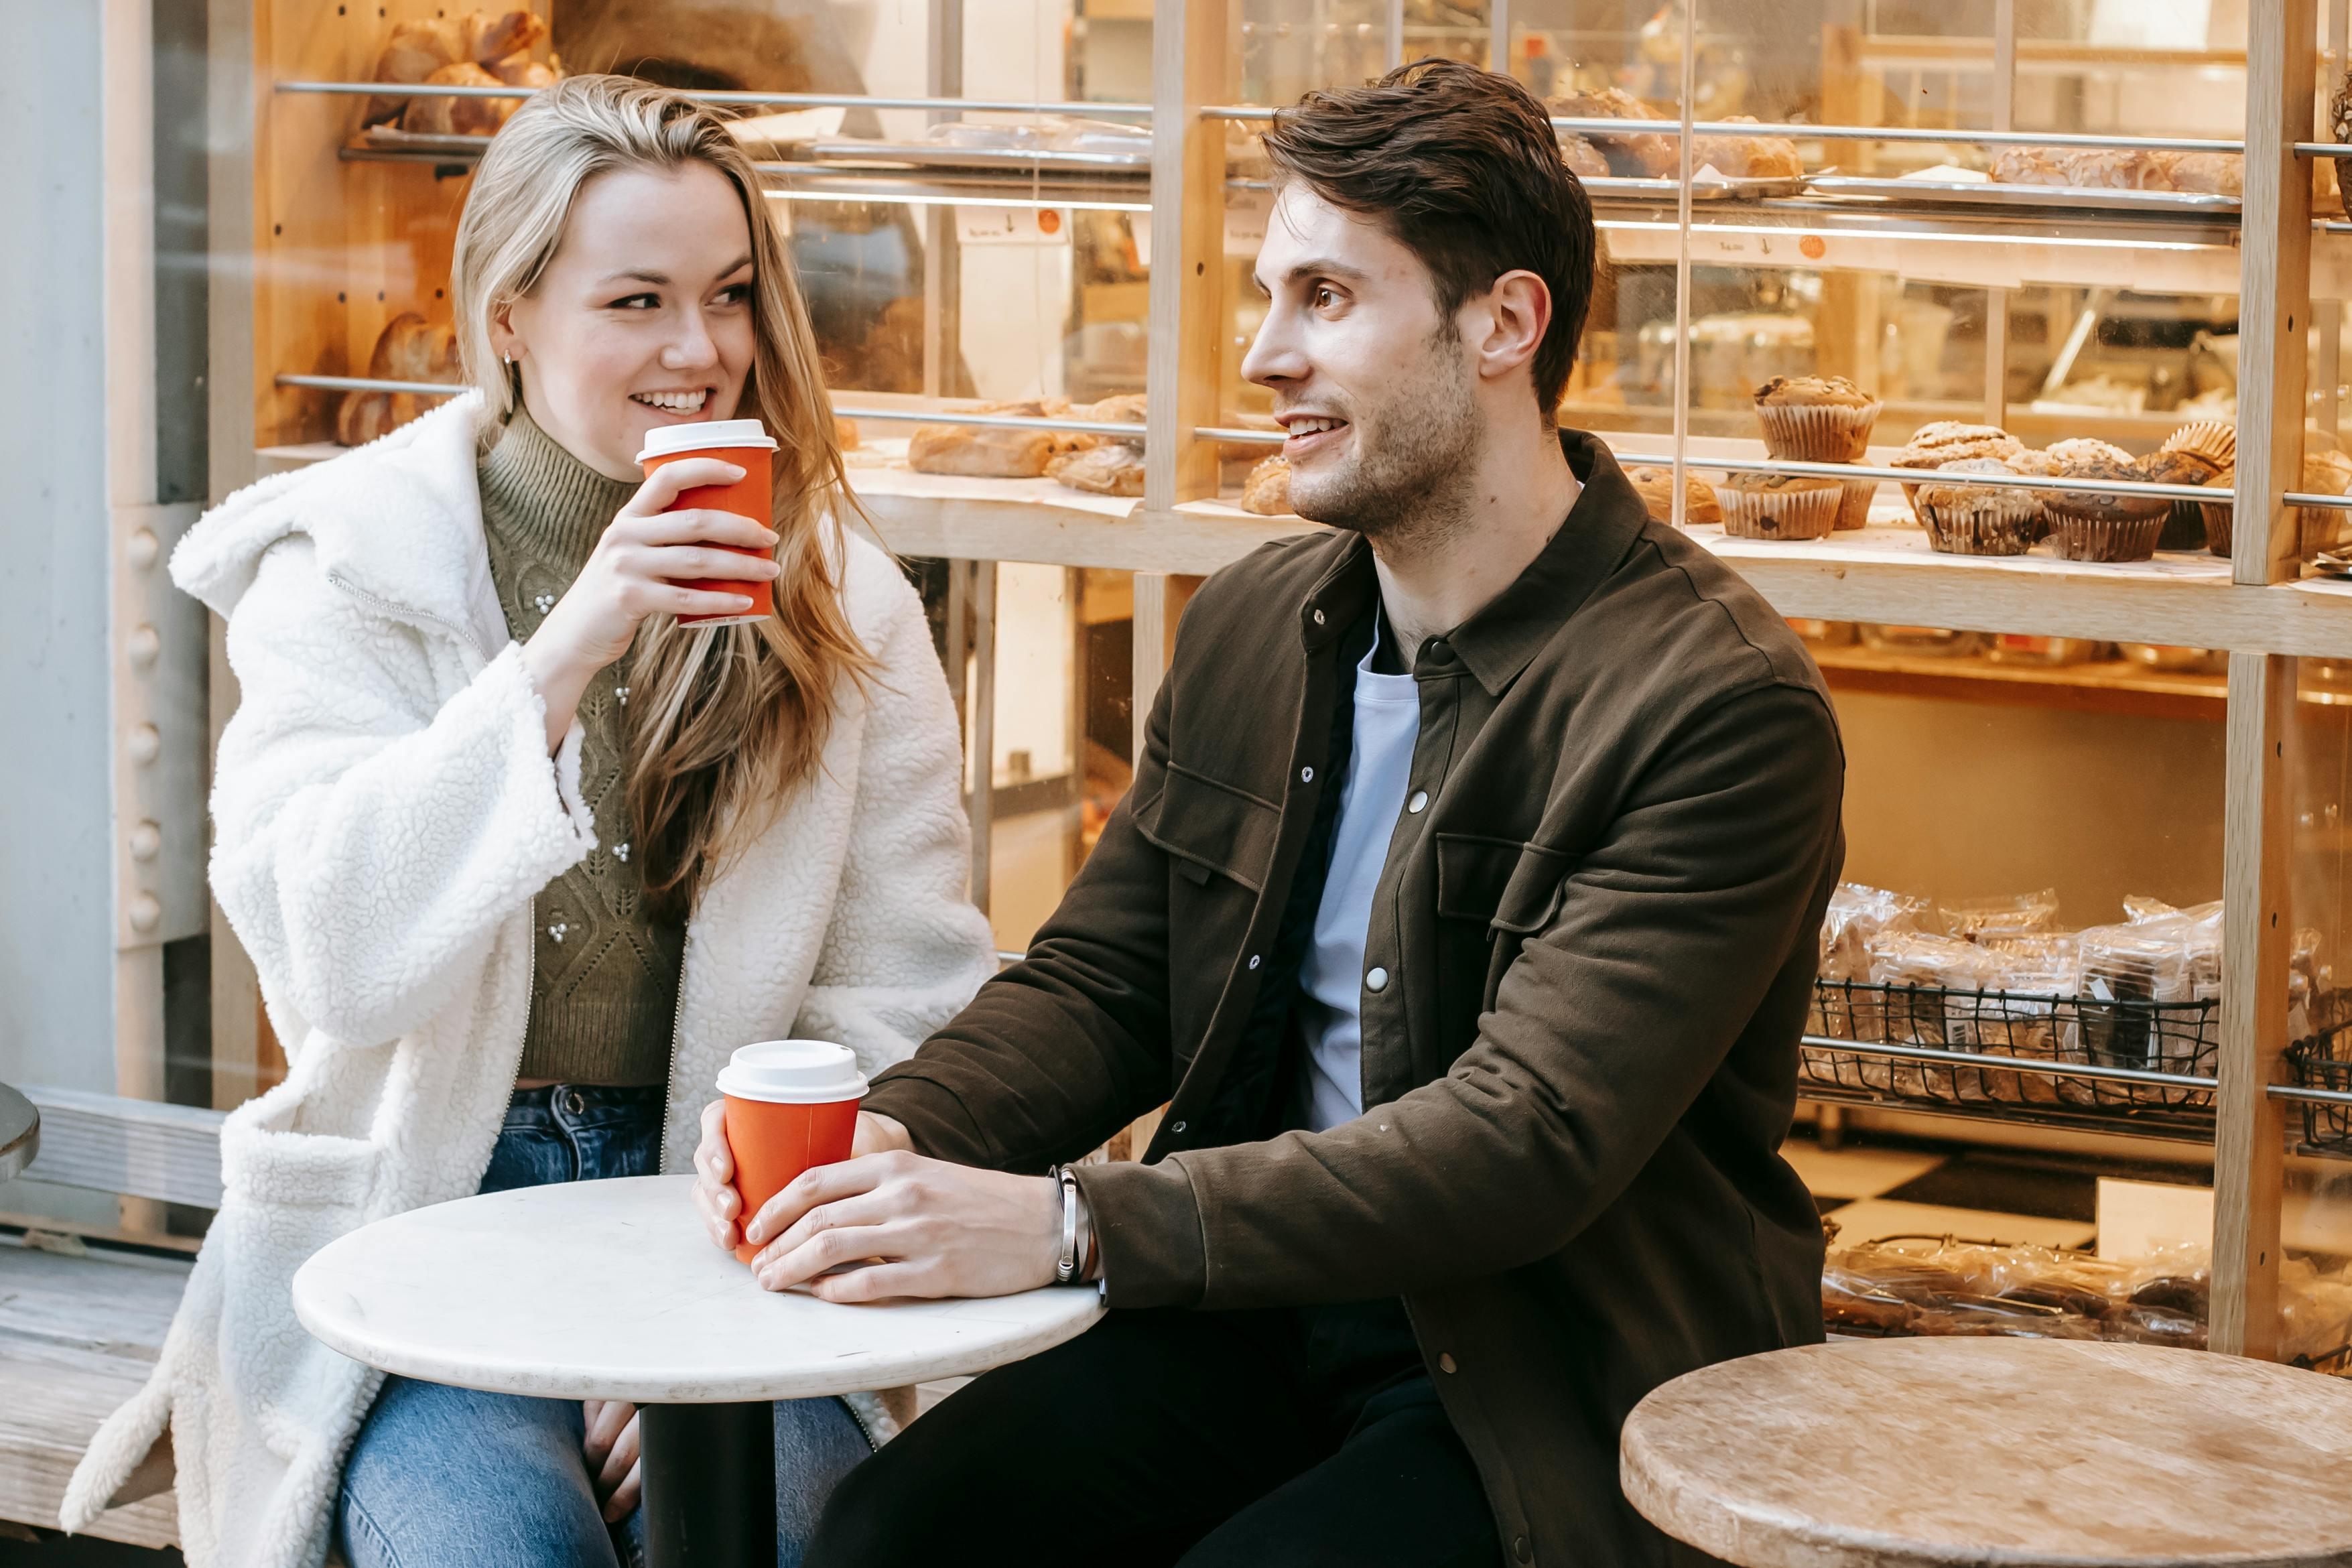 Two people having coffee | Source: Pexels